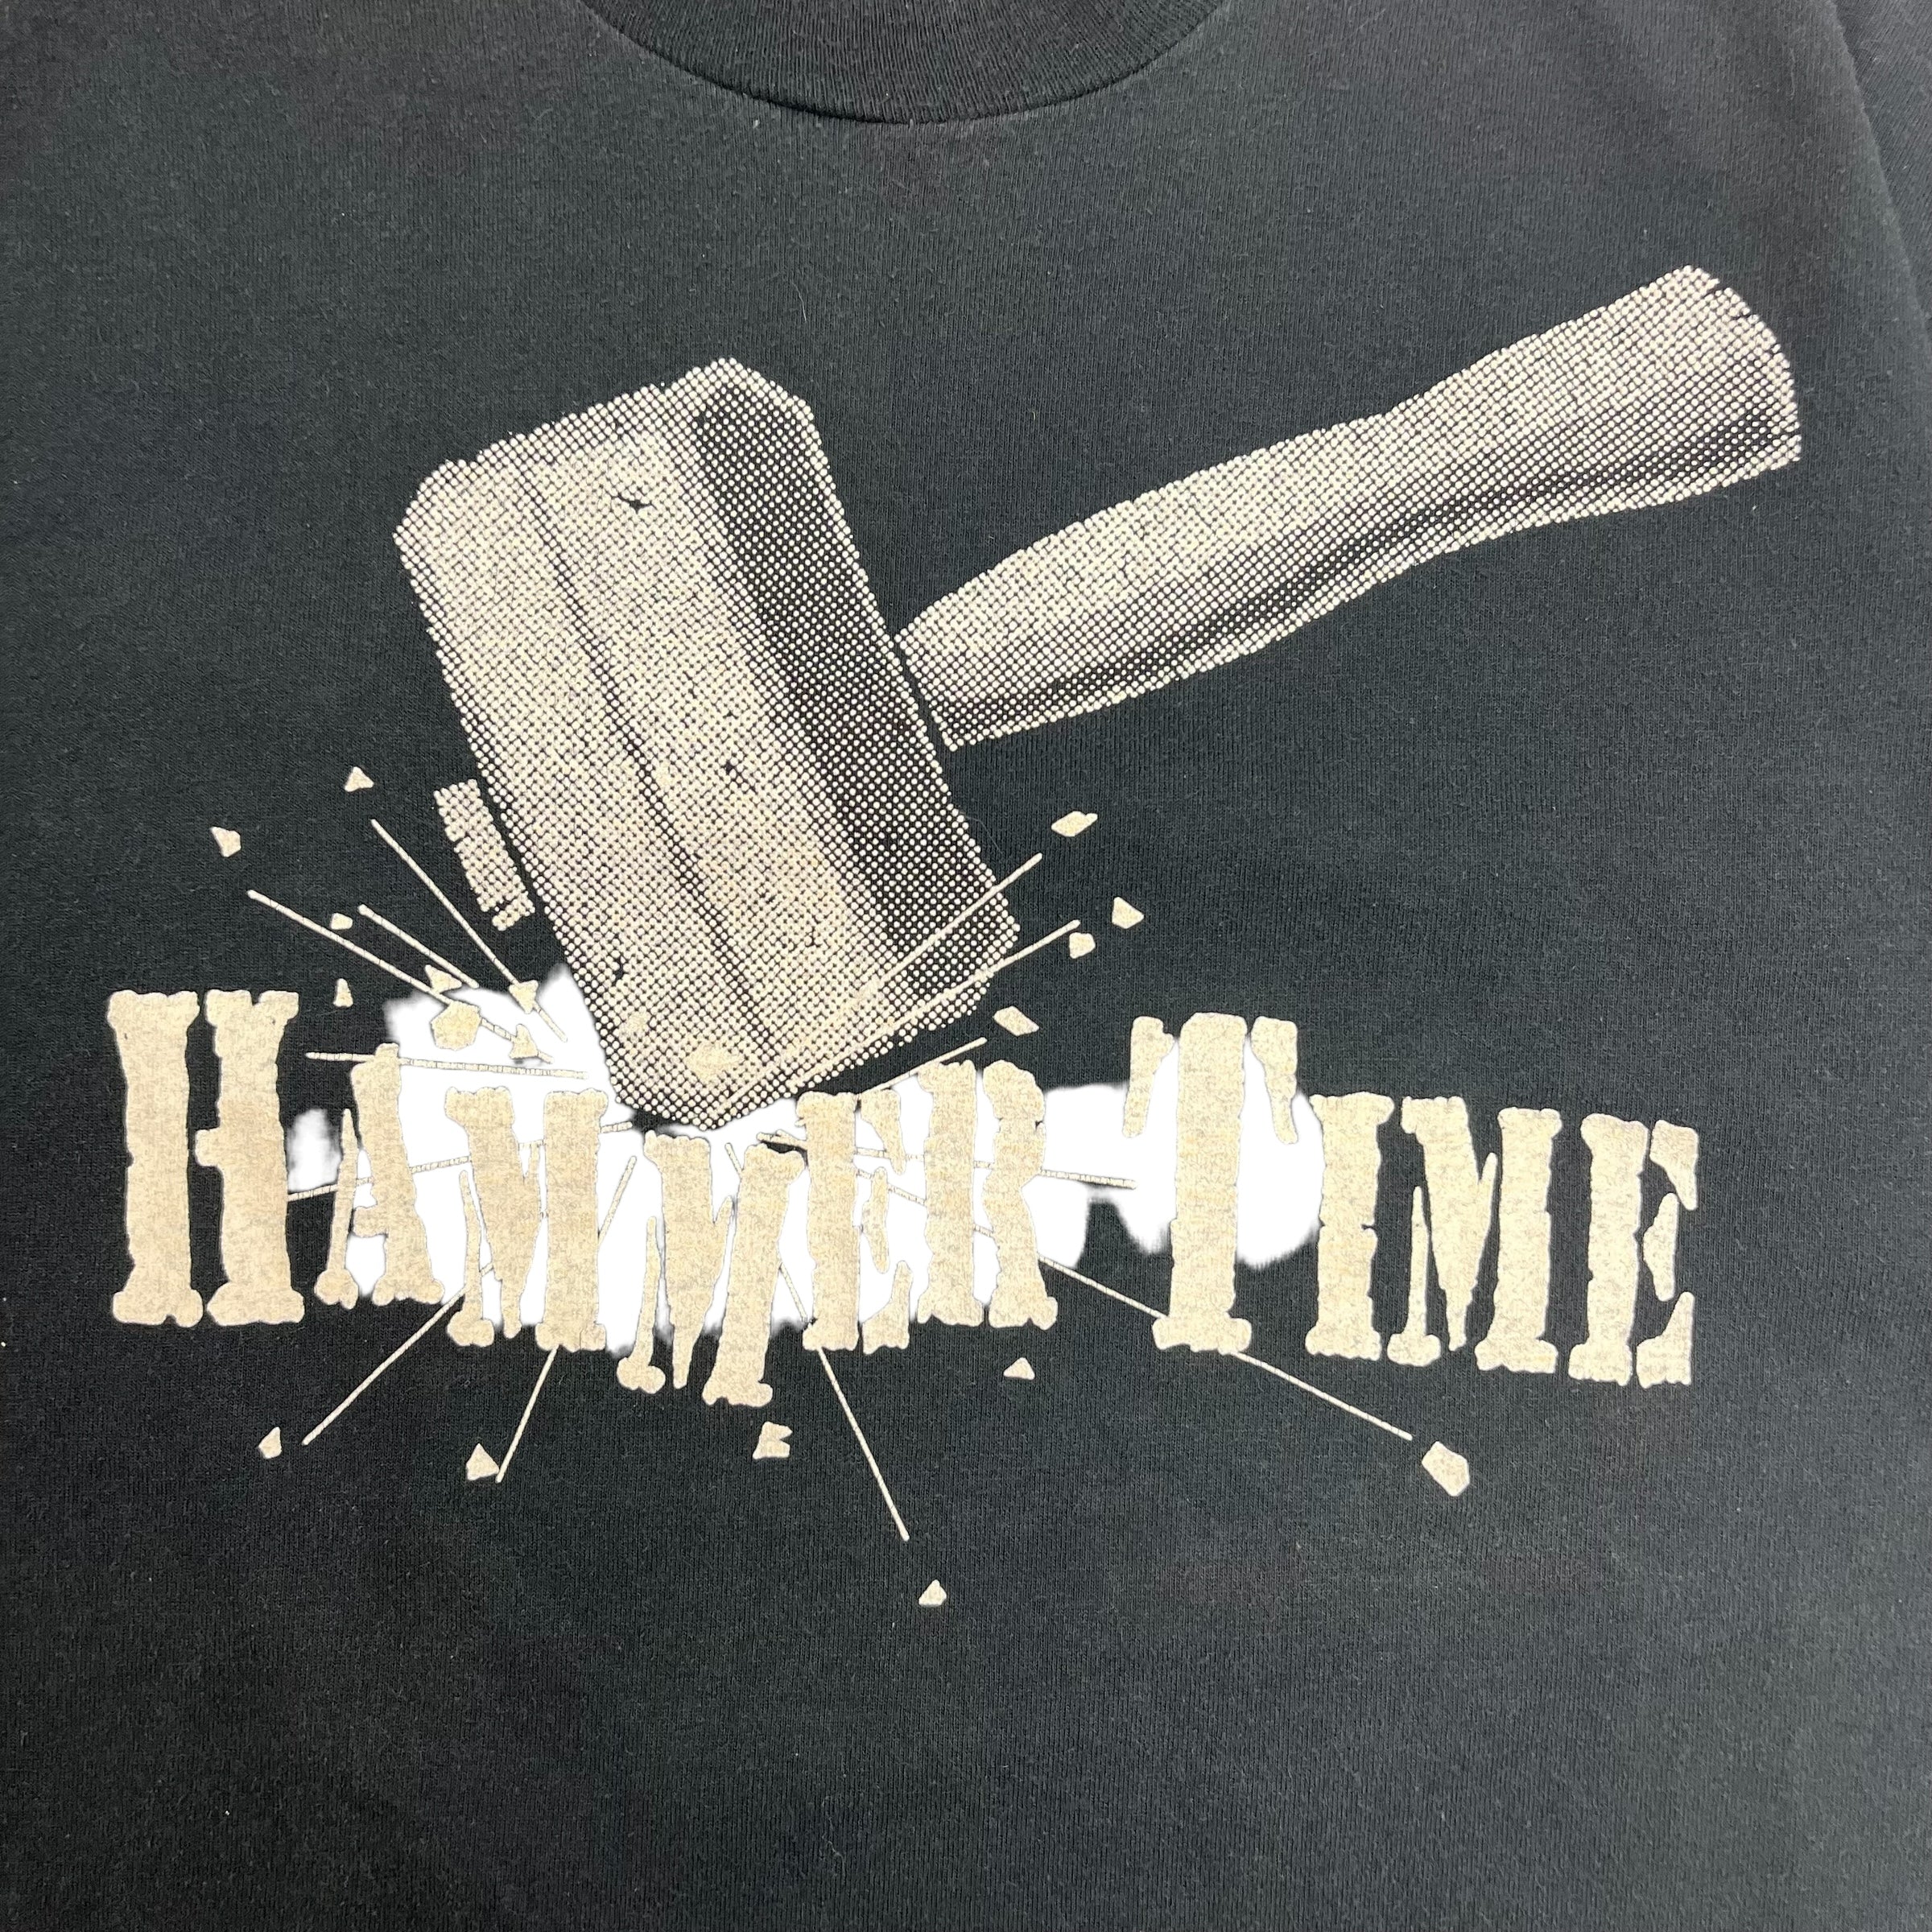 1990 Detroit Pistons 'Hammer Time' T-Shirt - Black